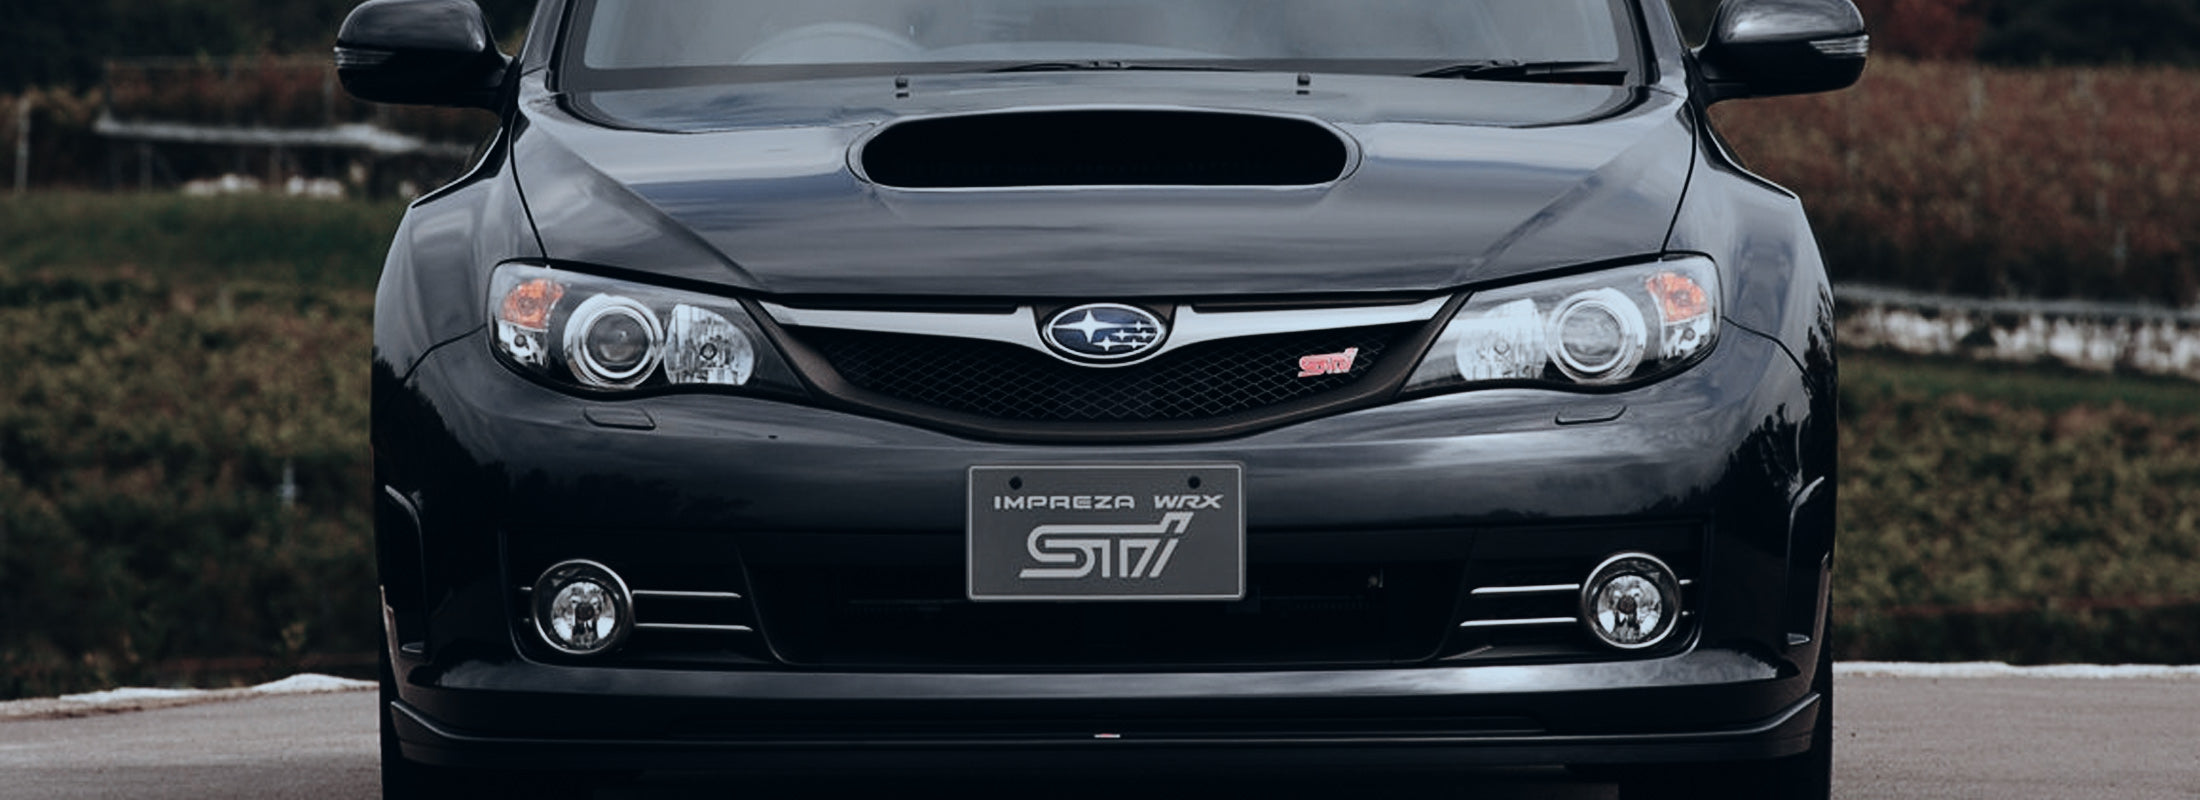 2008-2014 Subaru Impreza WRX STI GR